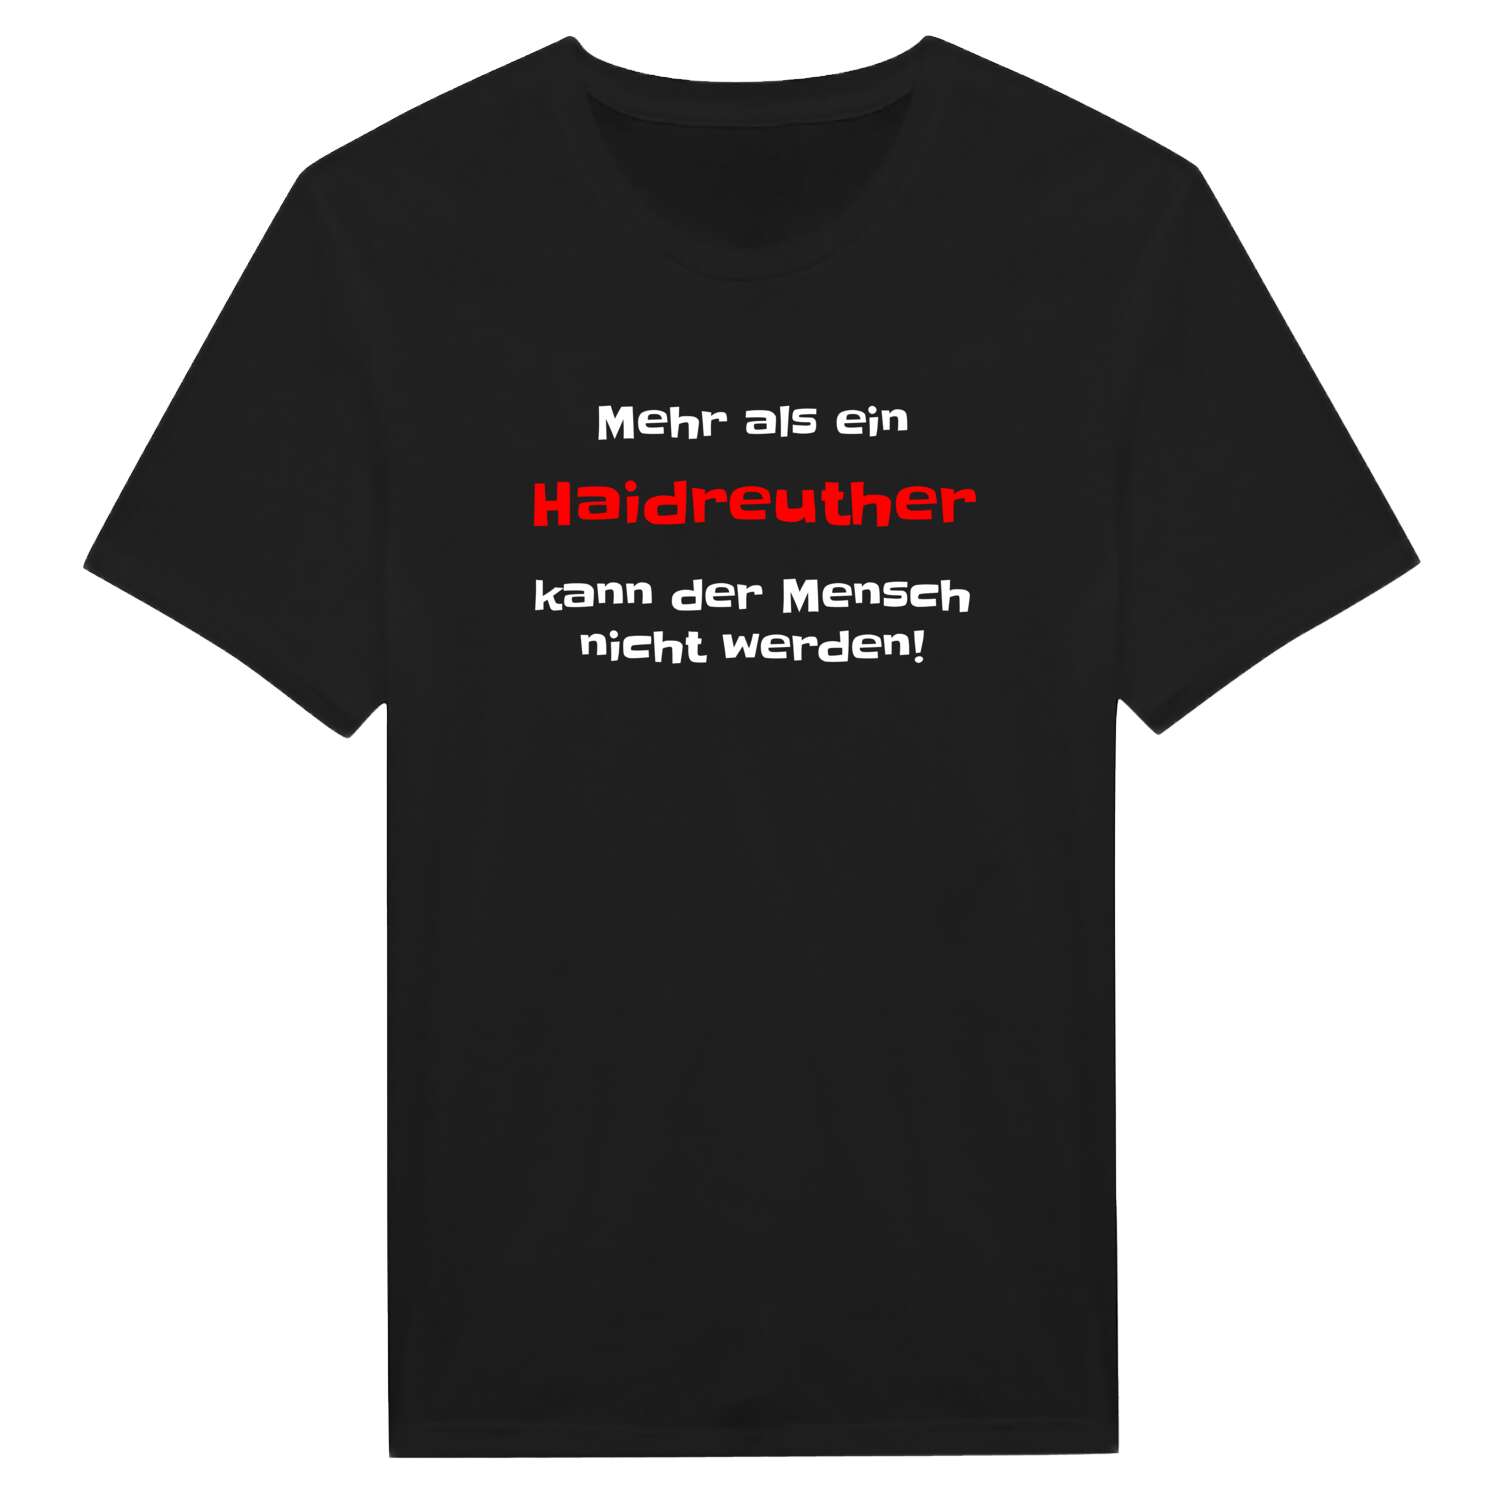 Haidreuth T-Shirt »Mehr als ein«